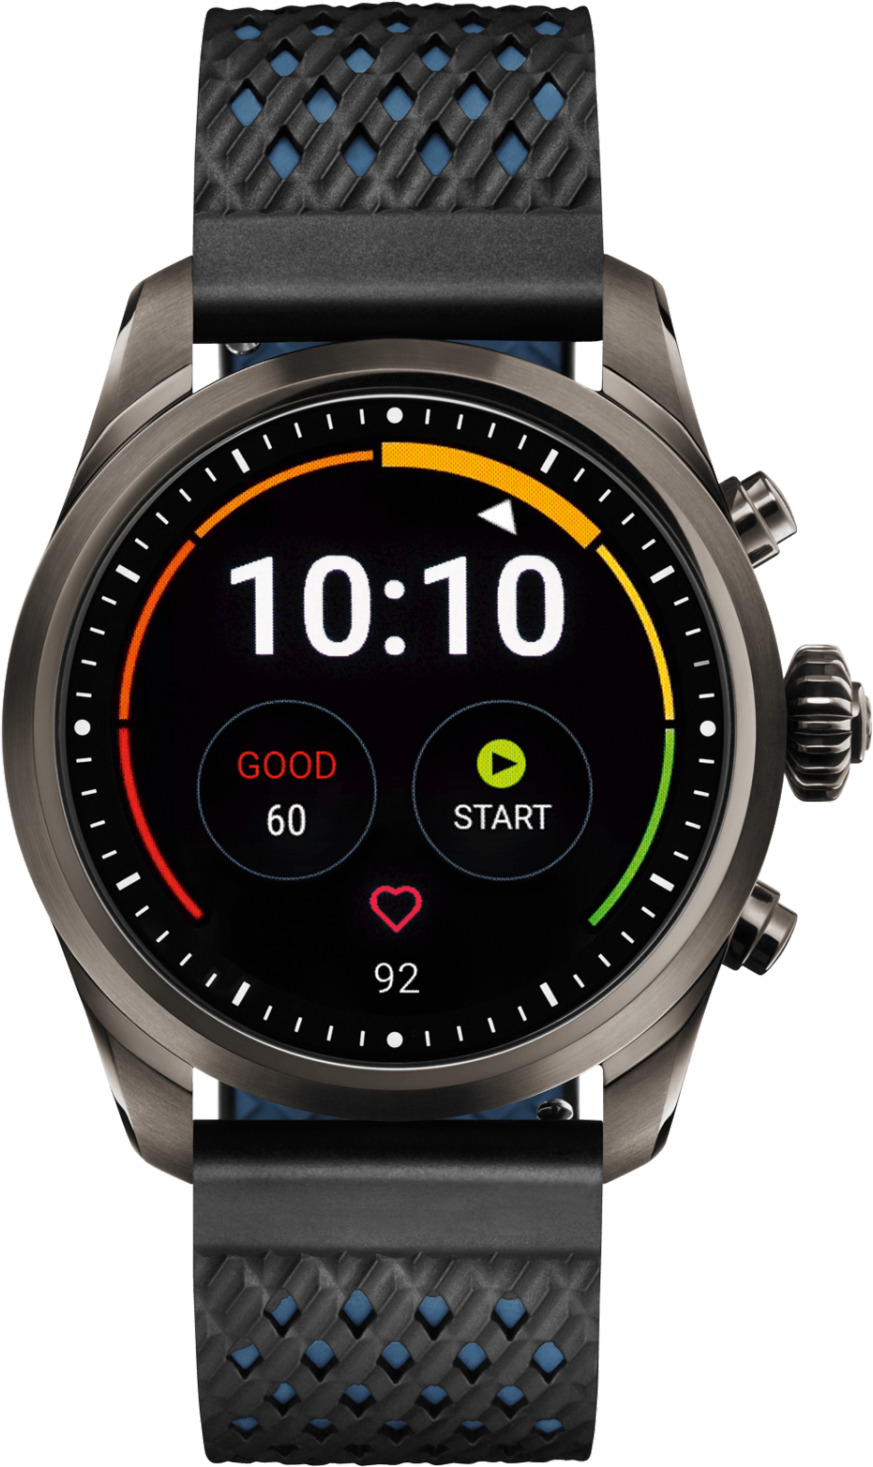 Đồng hồ thông minh - Smart watch Montblanc Summit 2 119563